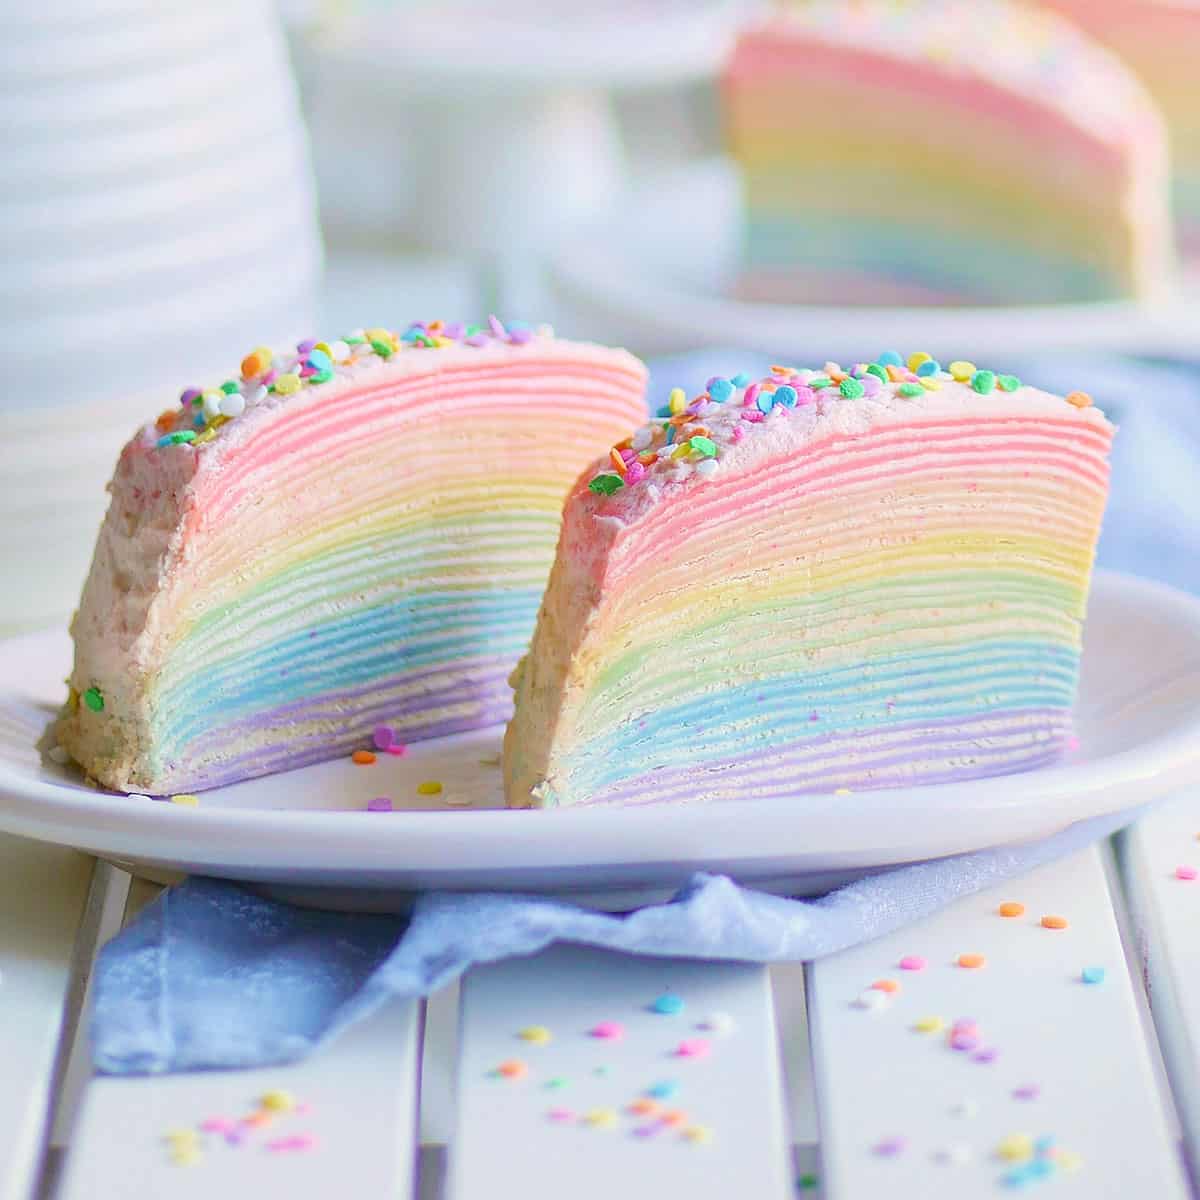 How to Make a Rainbow Cake Recipe  7 Layers  Veena Azmanov